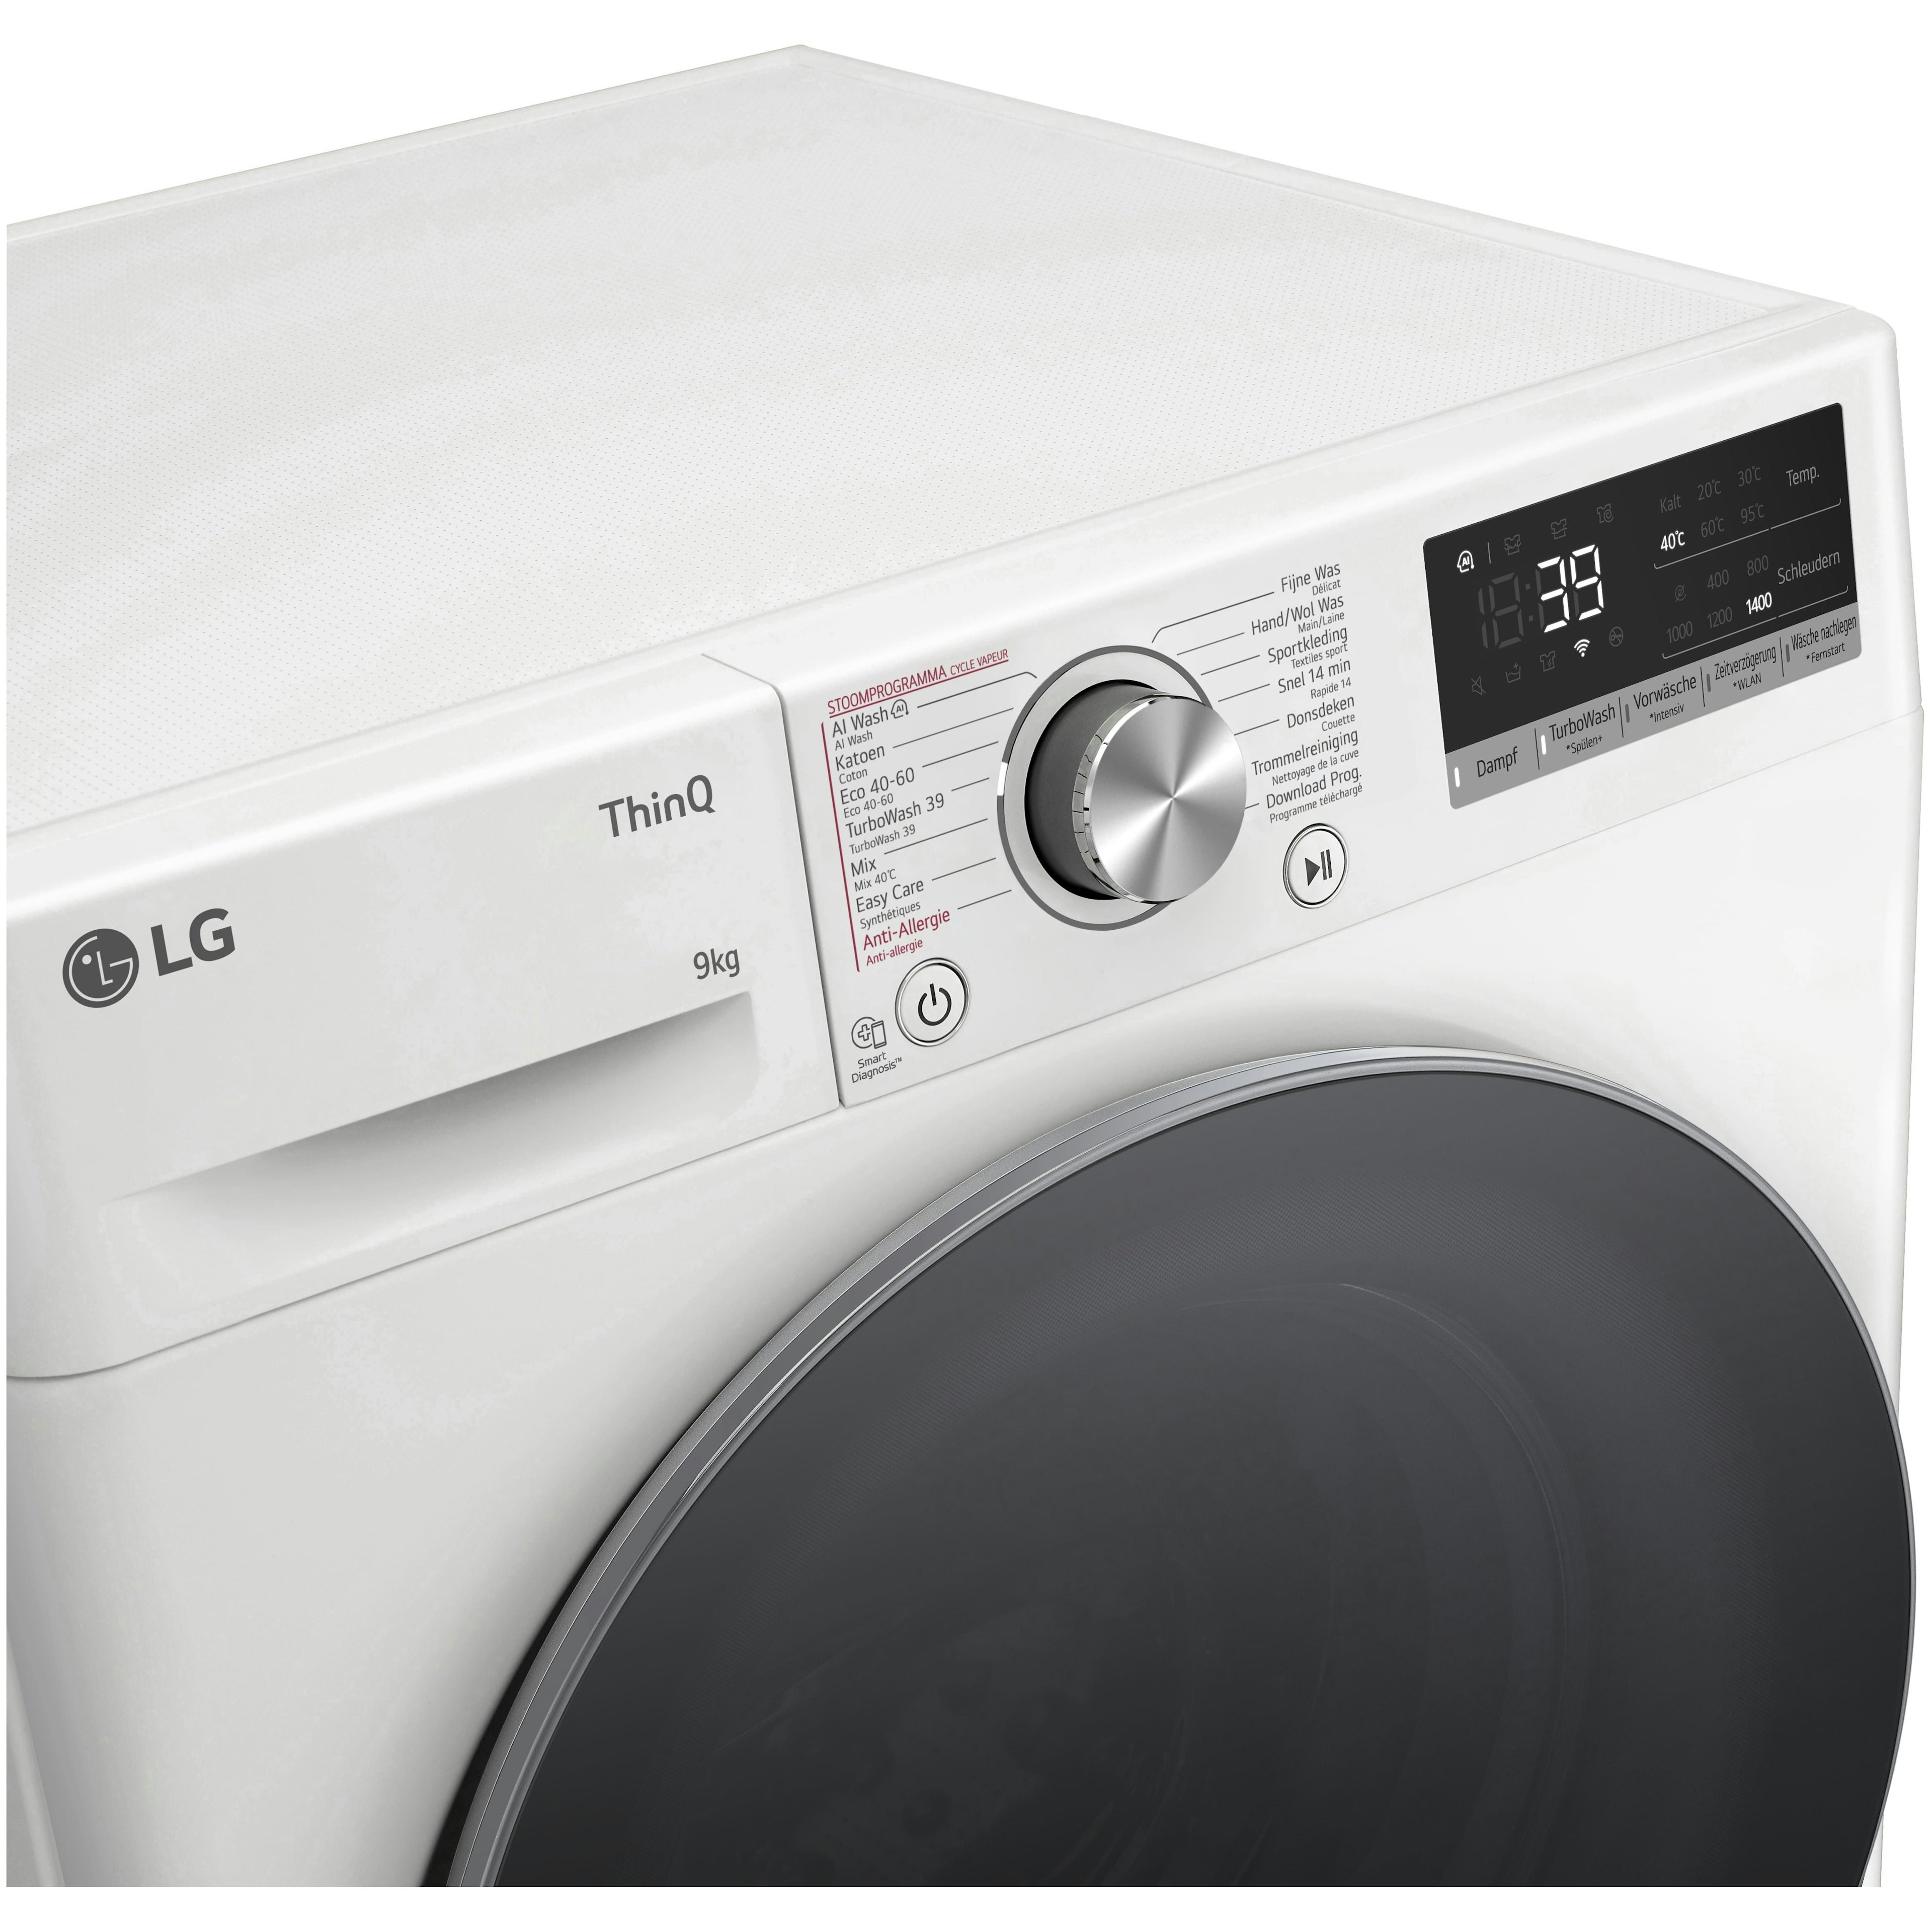 LG wasmachine GC3R709S1 afbeelding 3